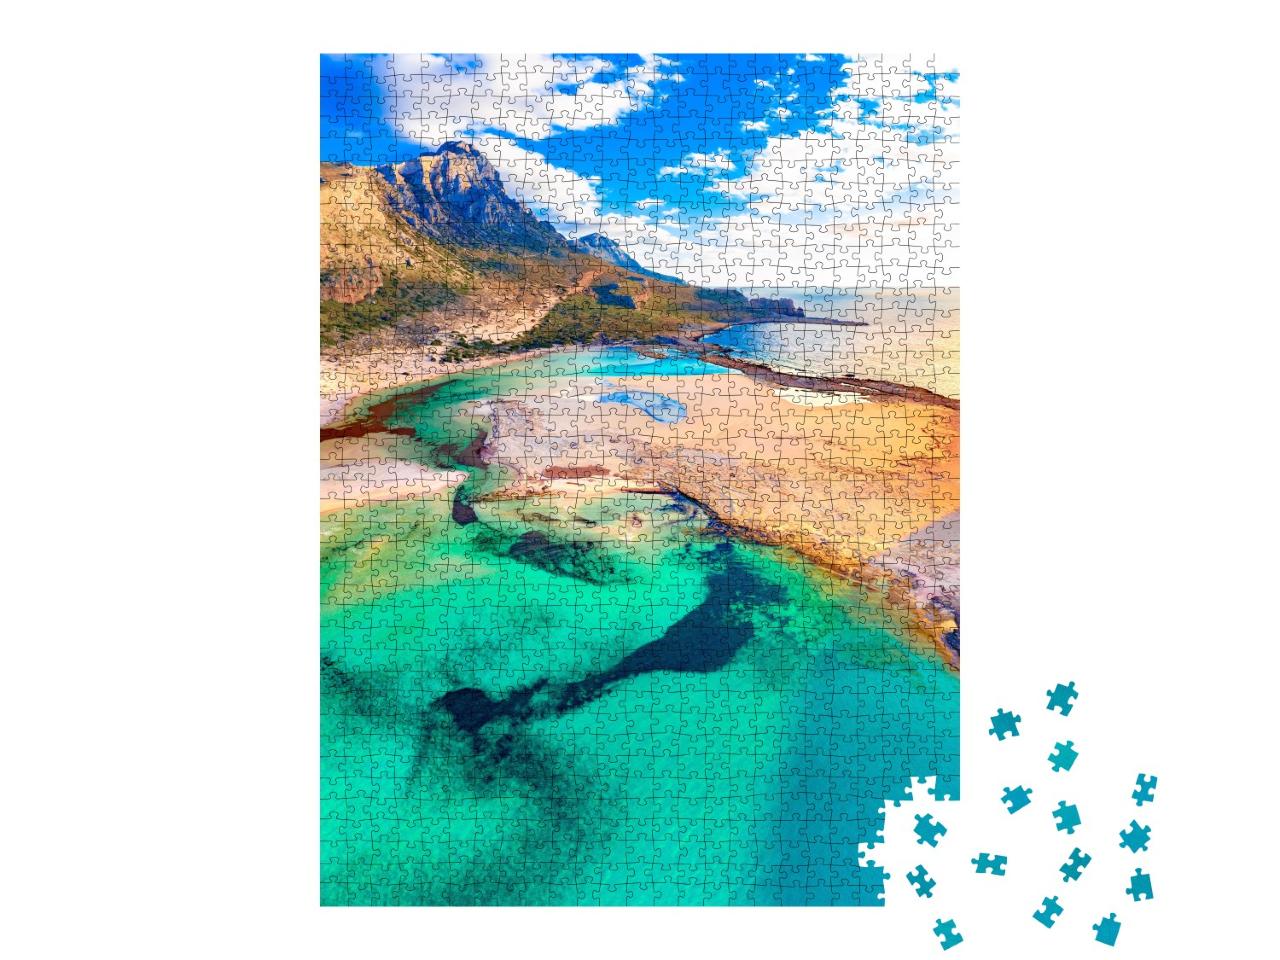 Puzzle de 1000 pièces « Lagon de Balos aux eaux turquoises et au sable blanc, Crète, Grèce »